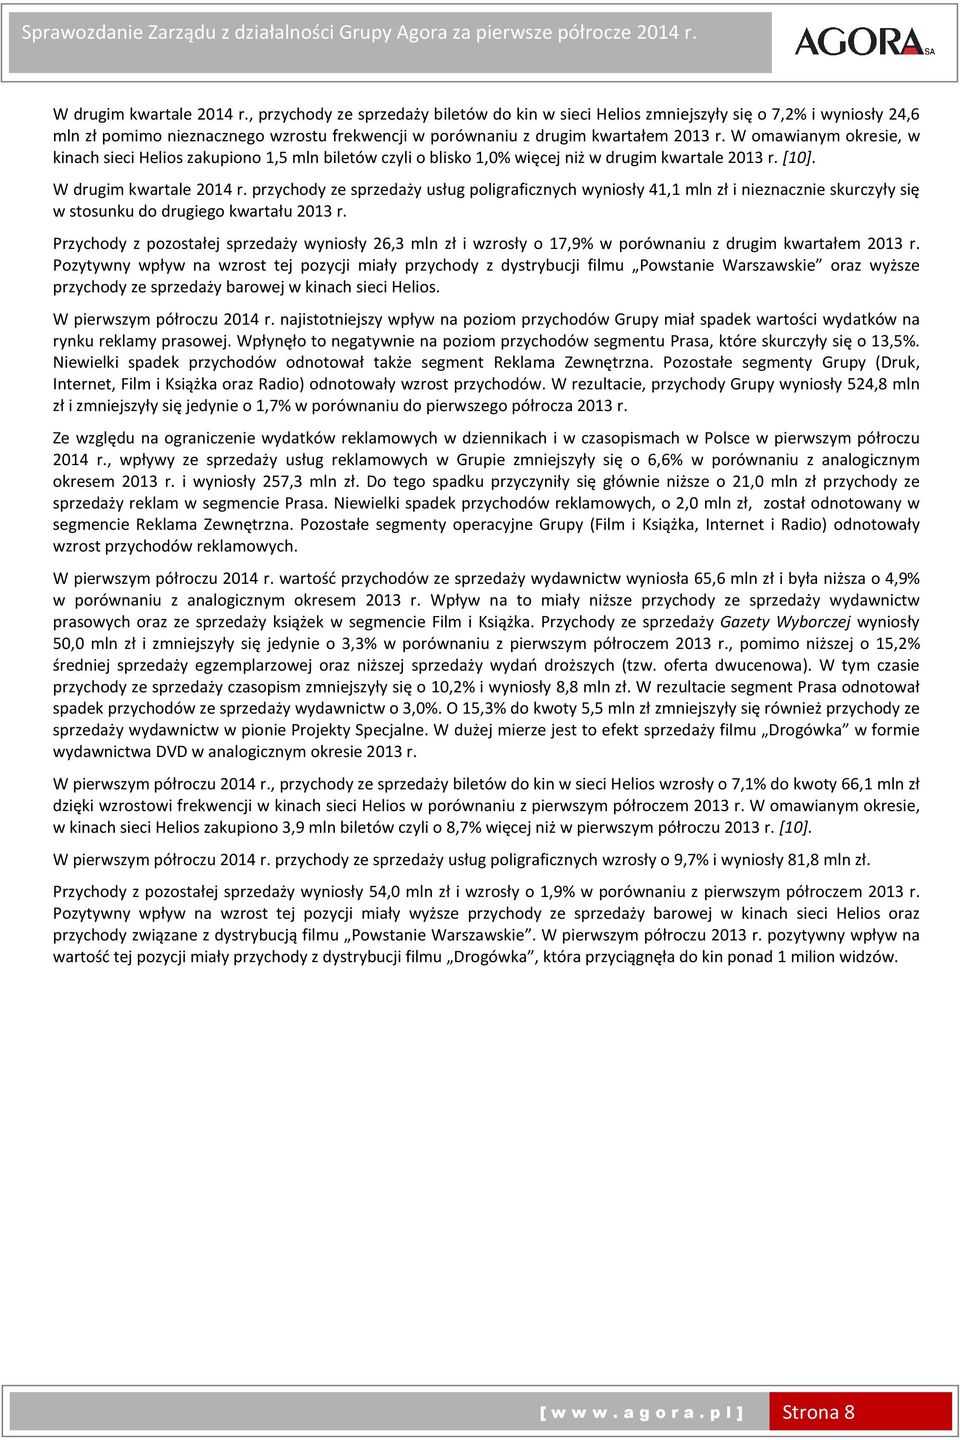 przychody ze sprzedaży usług poligraficznych wyniosły 41,1 mln zł i nieznacznie skurczyły się w stosunku do drugiego kwartału r.